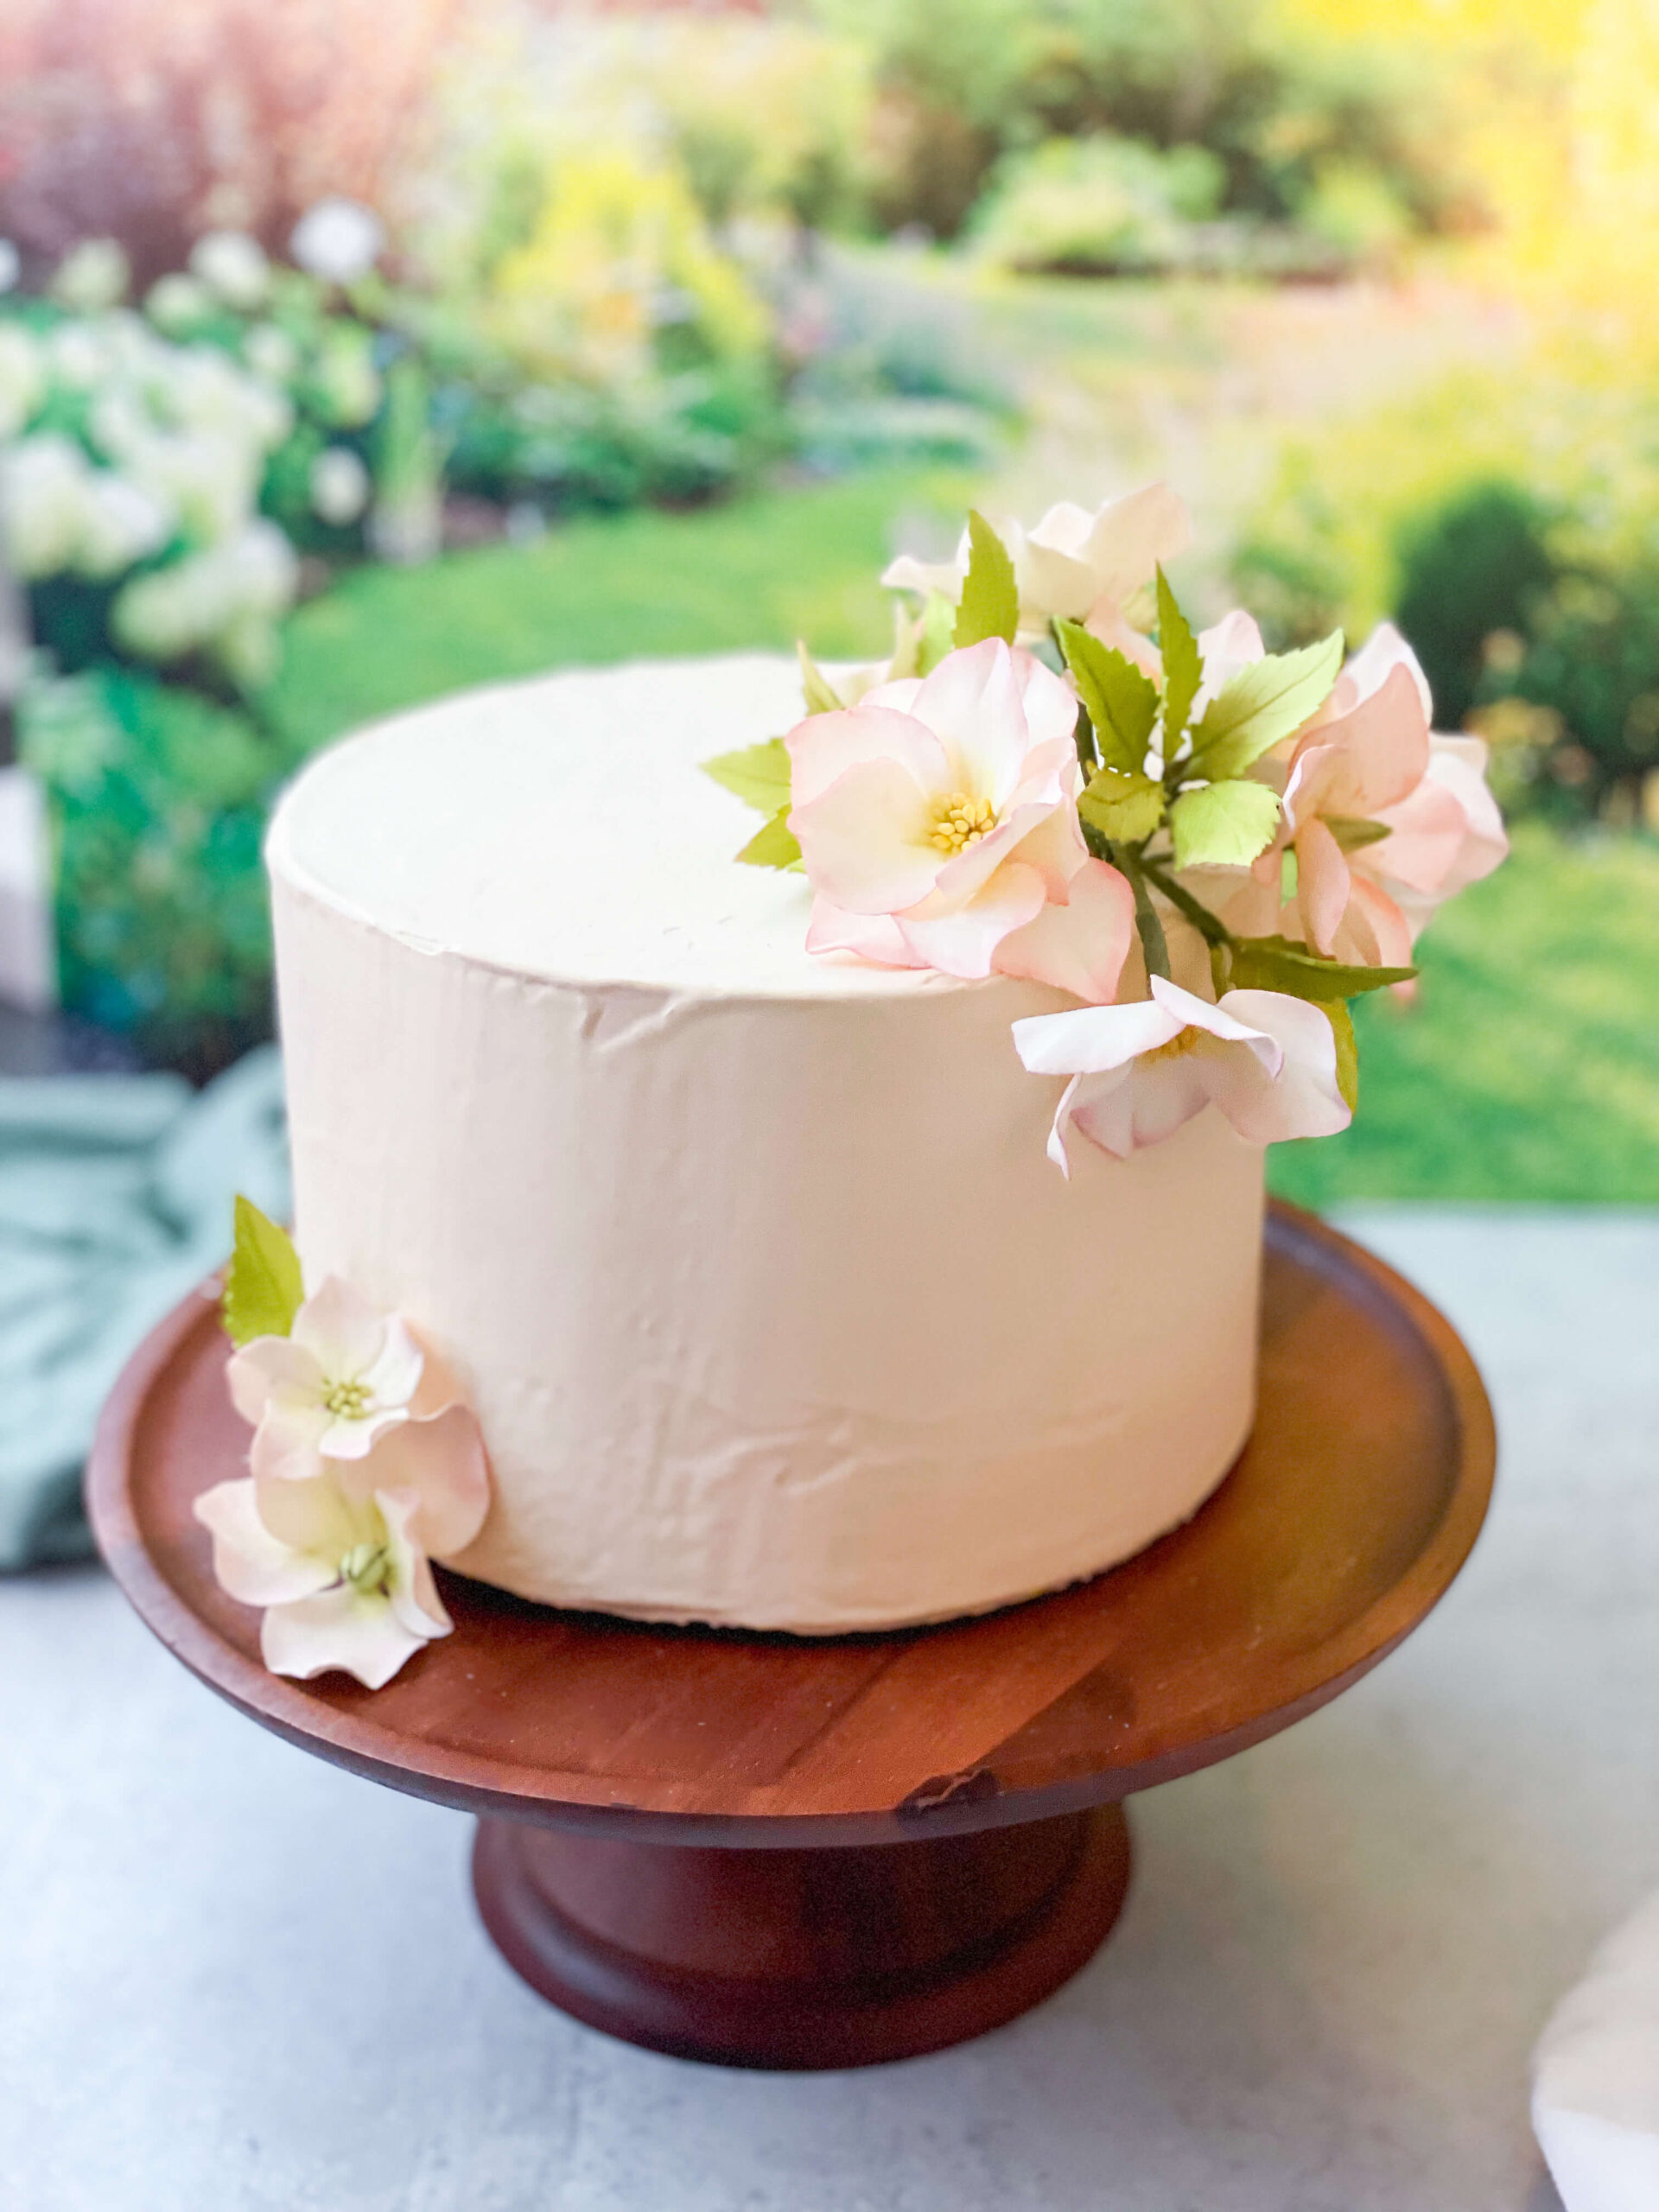 2023 Wedding Trends with Sugar Flowers Sugar Flowers by Kelsie Cakes